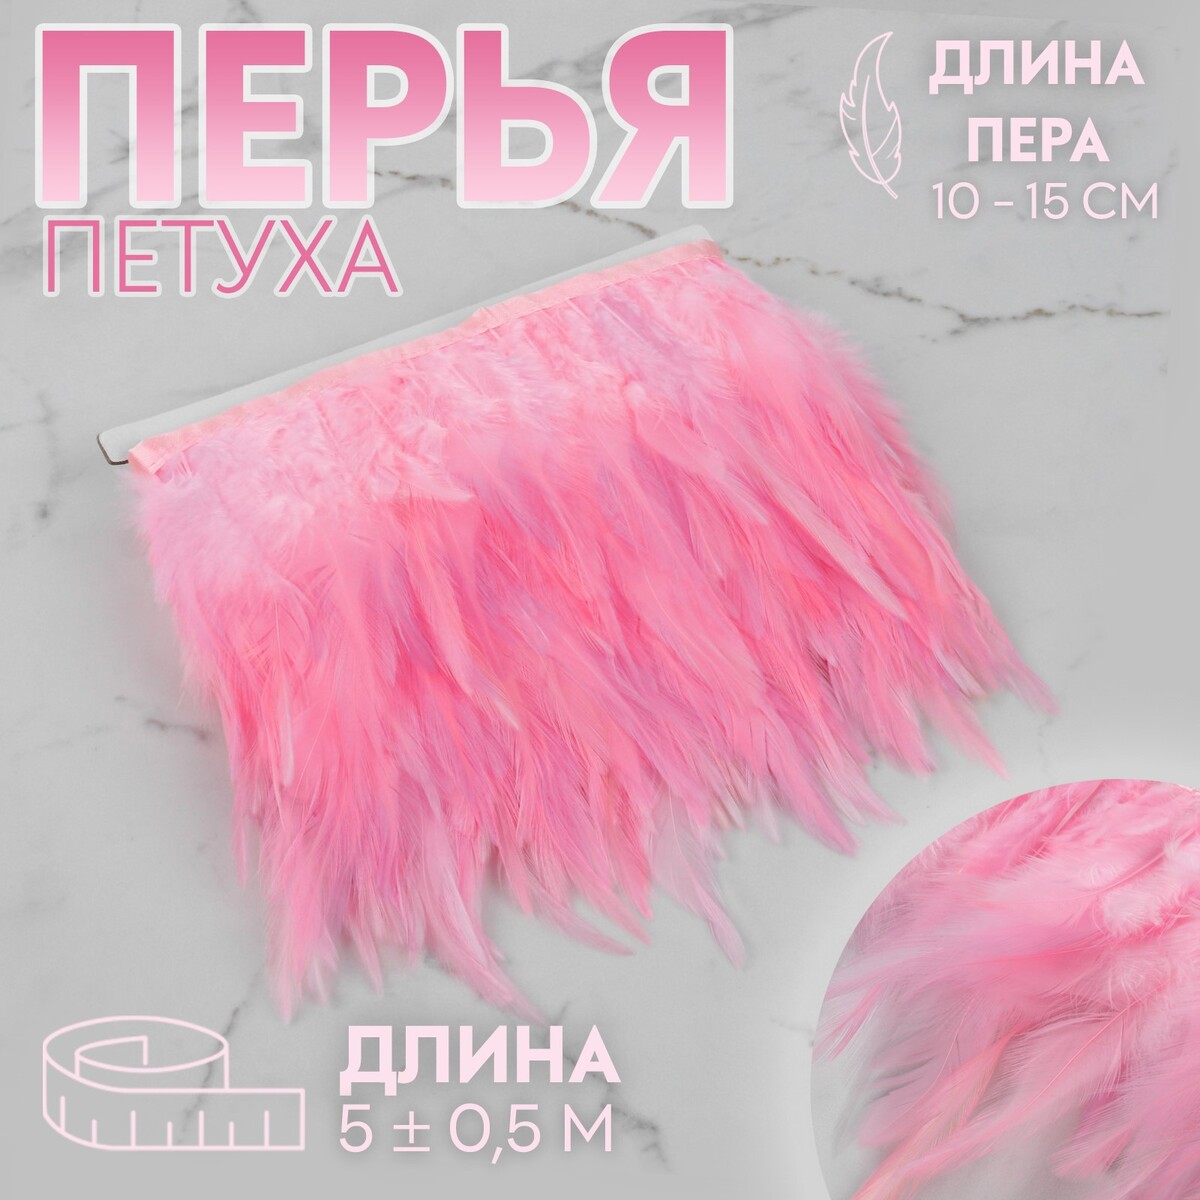 Тесьма с перьями петуха, 10-15 см, 5 ± 0,5 м, цвет розовый тесьма с перьями петуха 10 15 см 5 ± 0 5 м серый